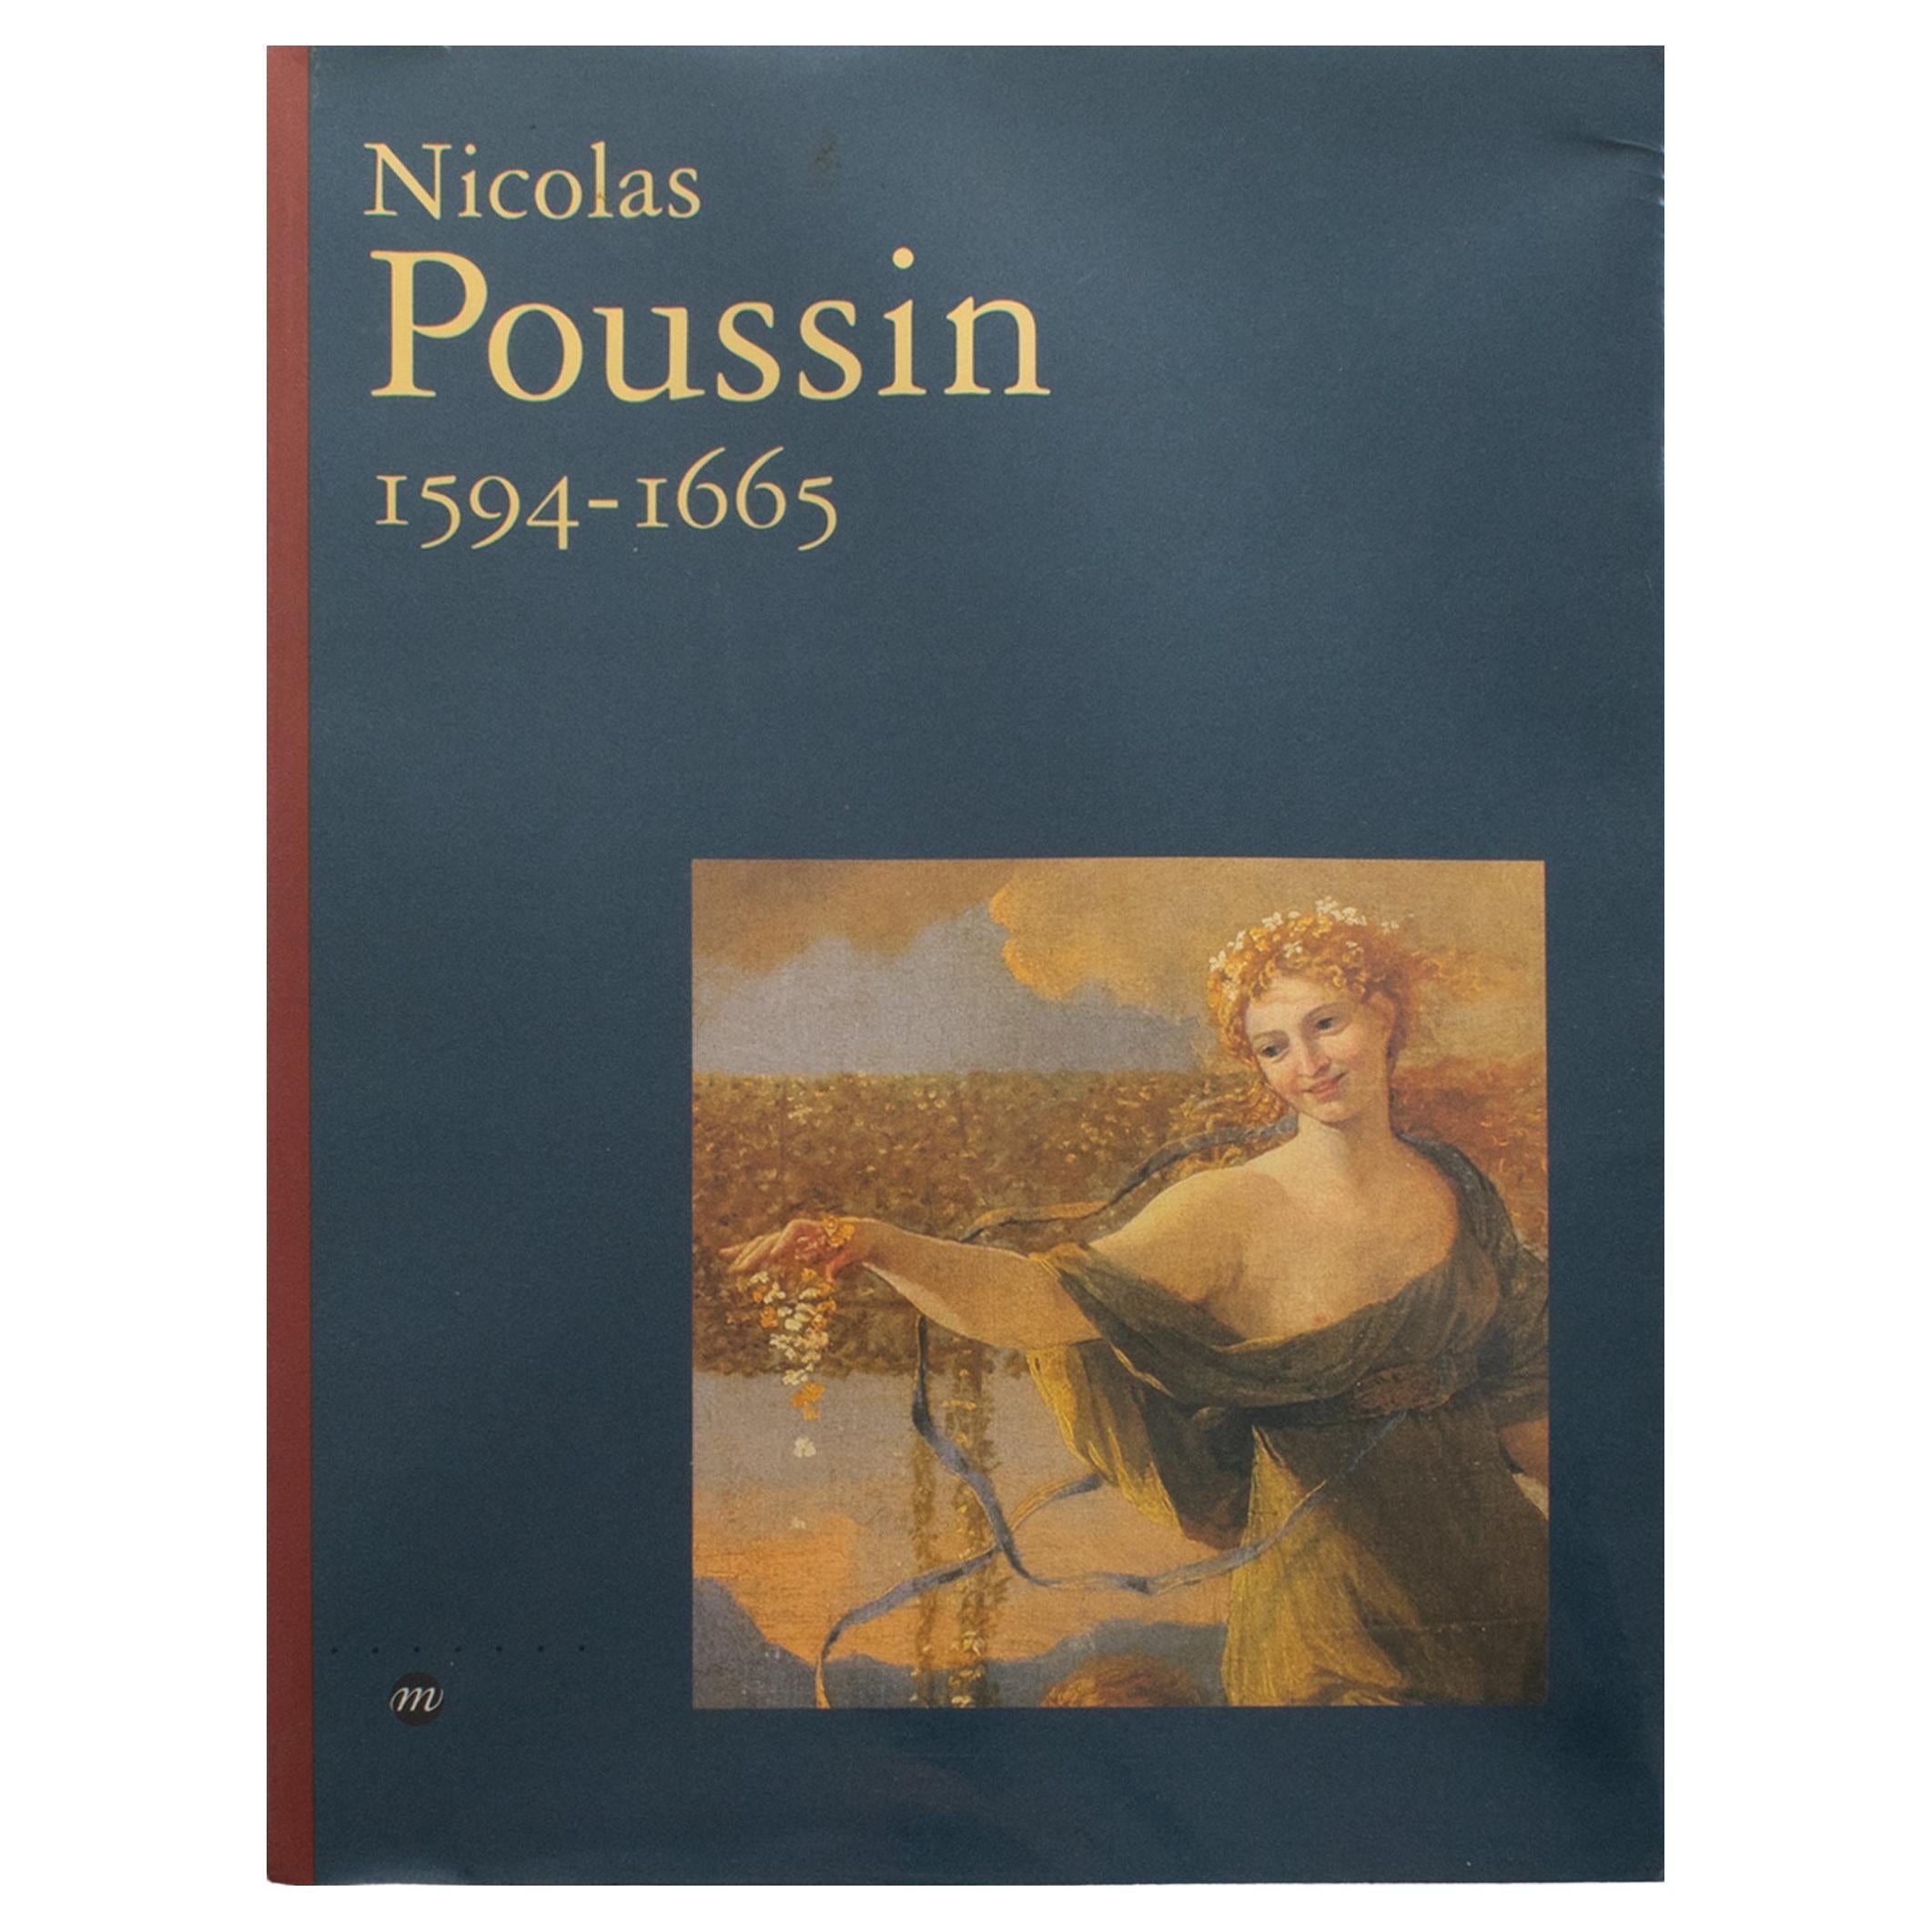 Nicolas Poussin, livre français de Pierre Rosenberg, 1994